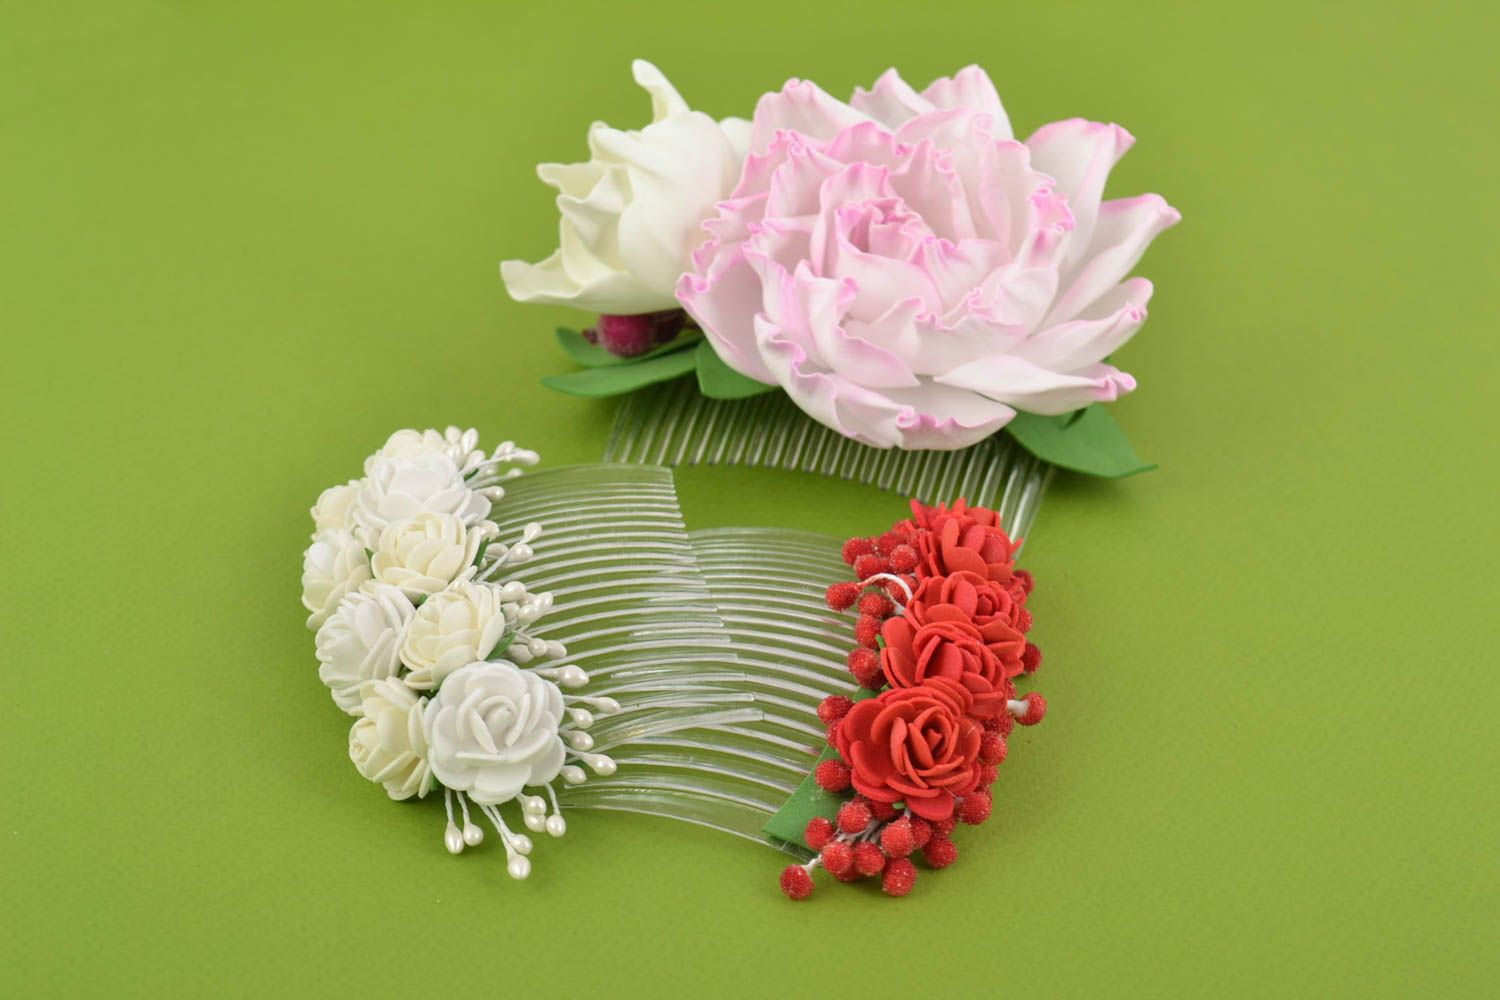 Гребни для волос с цветами из фоамирана набор из 3 штук красивые ручной работы фото 9